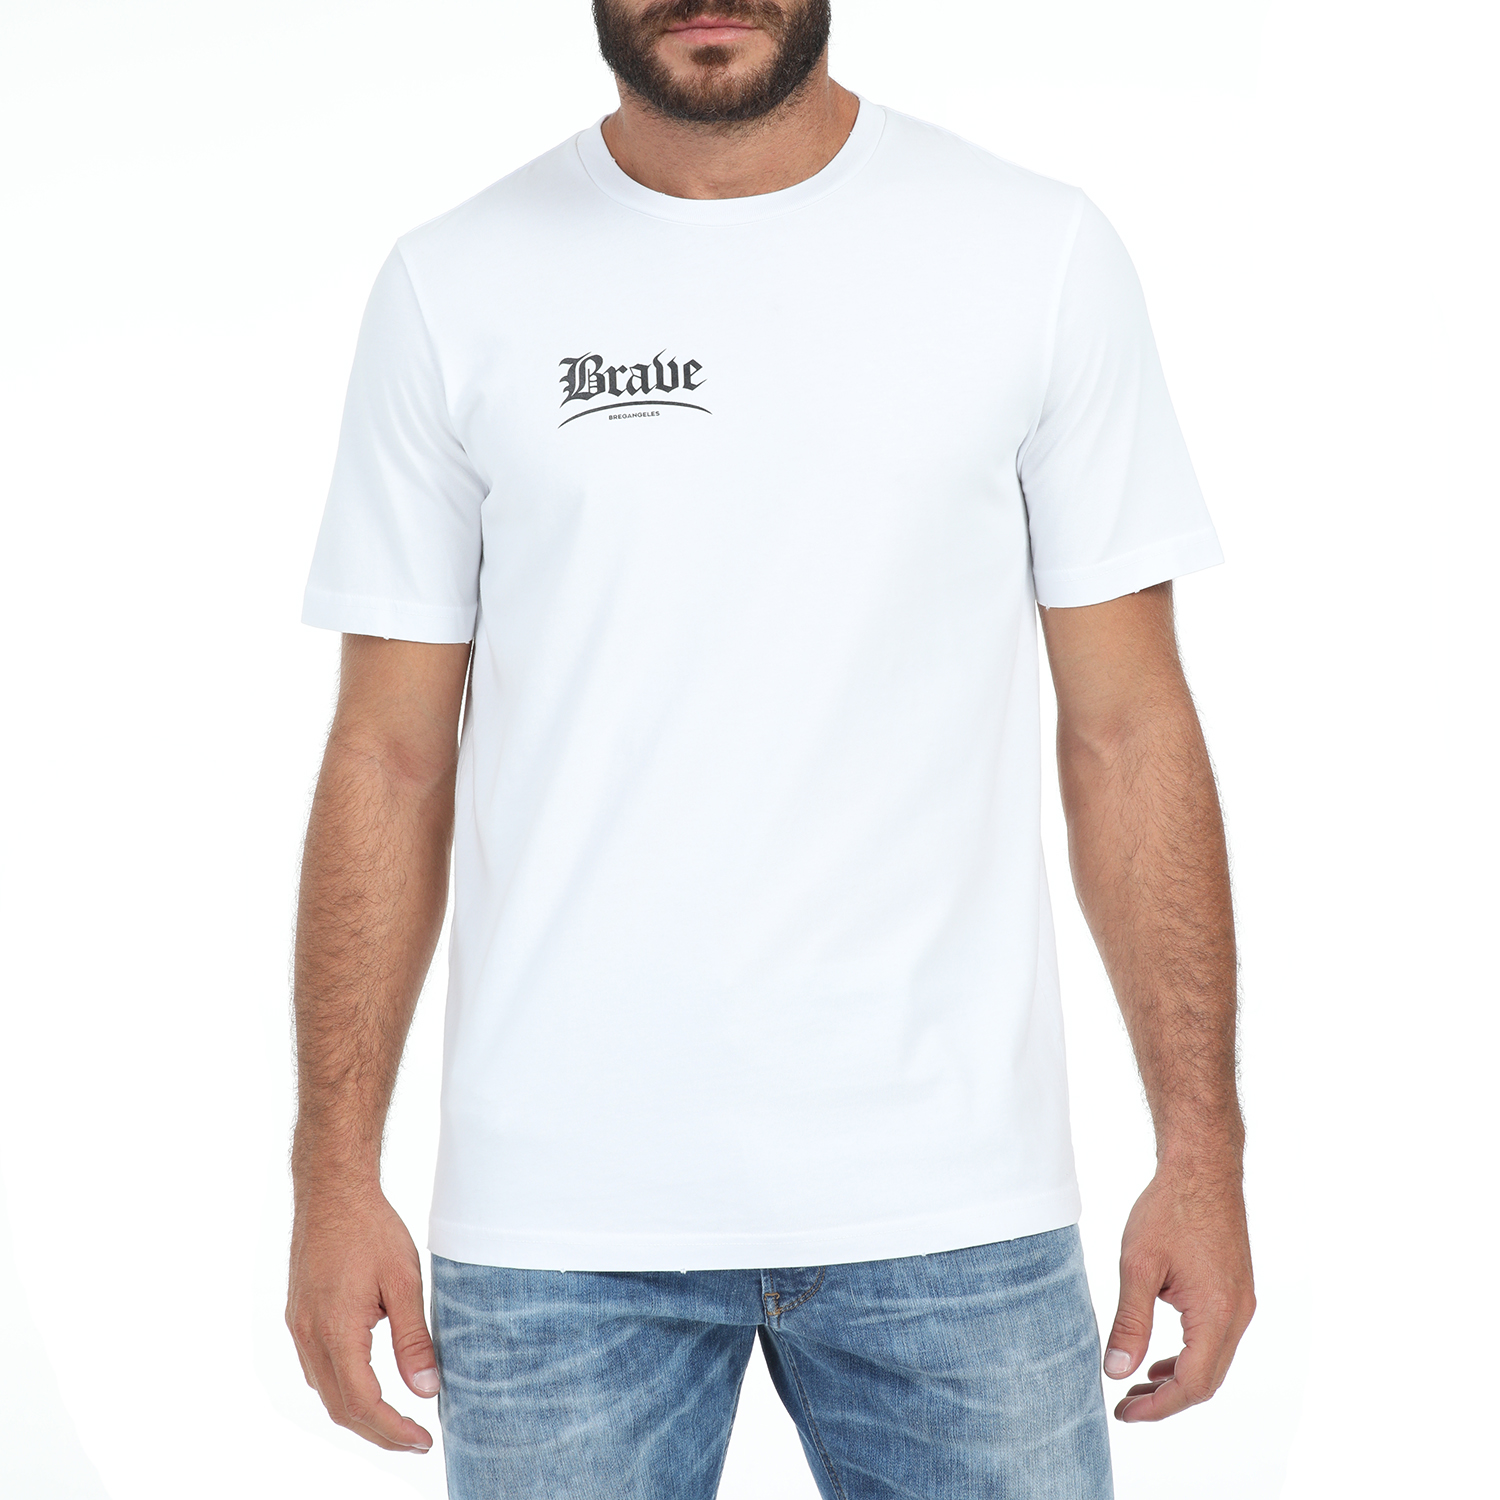 Ανδρικά/Ρούχα/Μπλούζες/Κοντομάνικες DIESEL - Ανδρικό t-shirt DIESEL T-JUST-Y14 MAGLIETTA λευκό